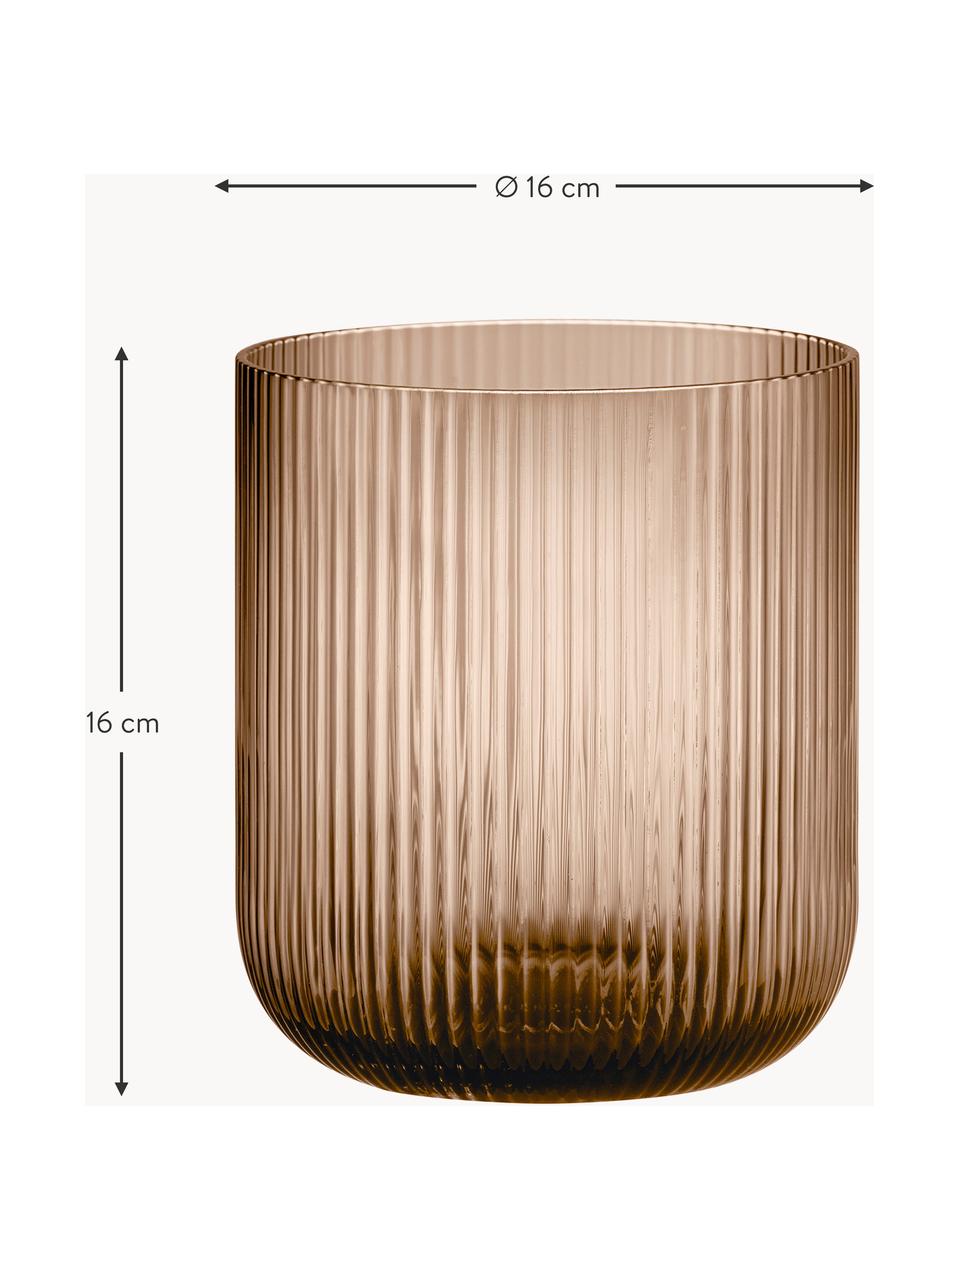 Windlicht Ven met groefreliëf, Glas, Lichtbruin, transparant, Ø 16 x H 16 cm